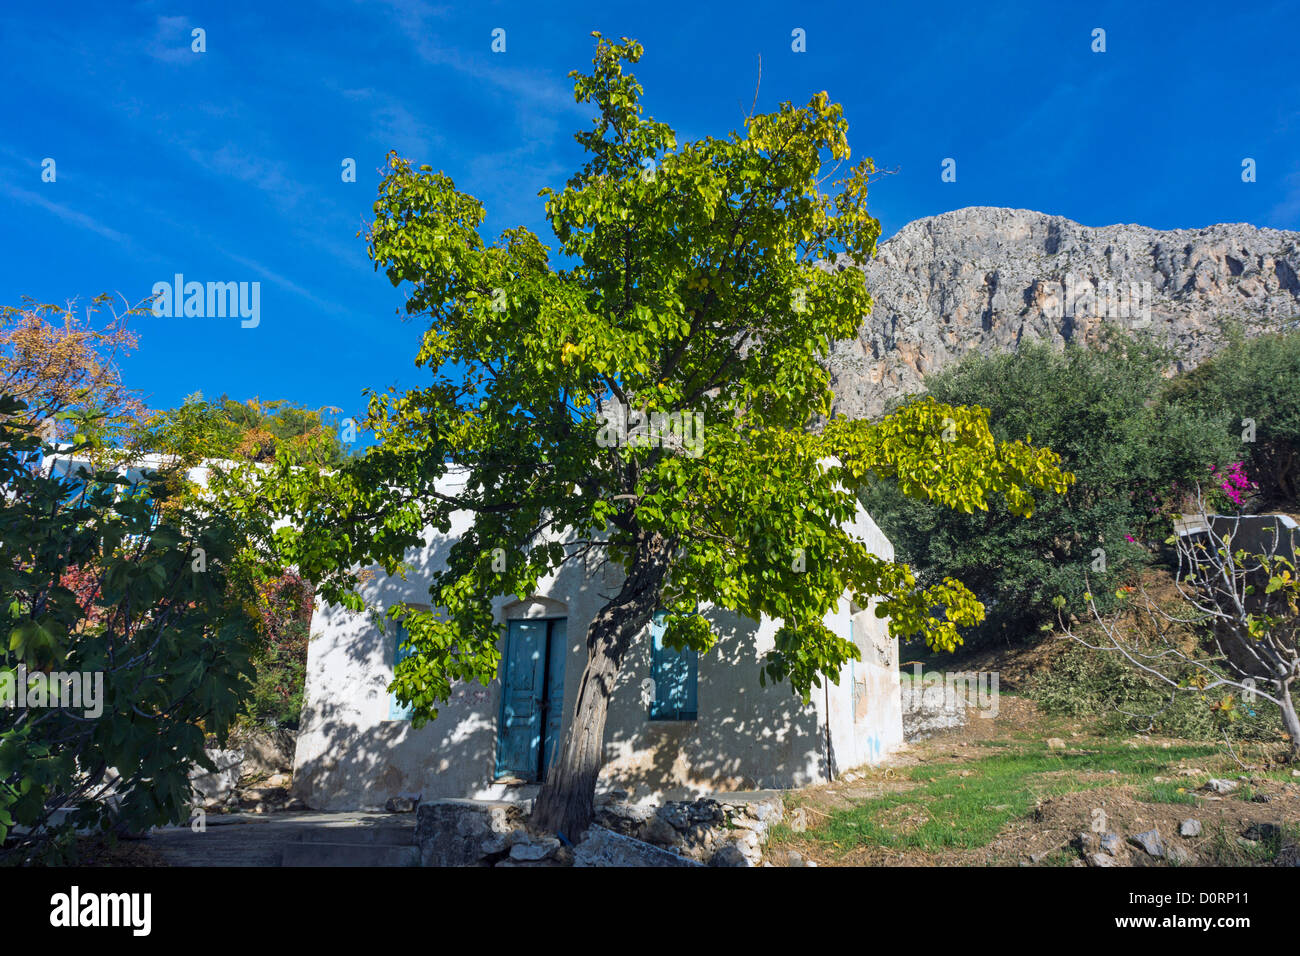 Petite maison grecque blanc aux volets bleus et d'arbres verts, les montagnes derrière Banque D'Images